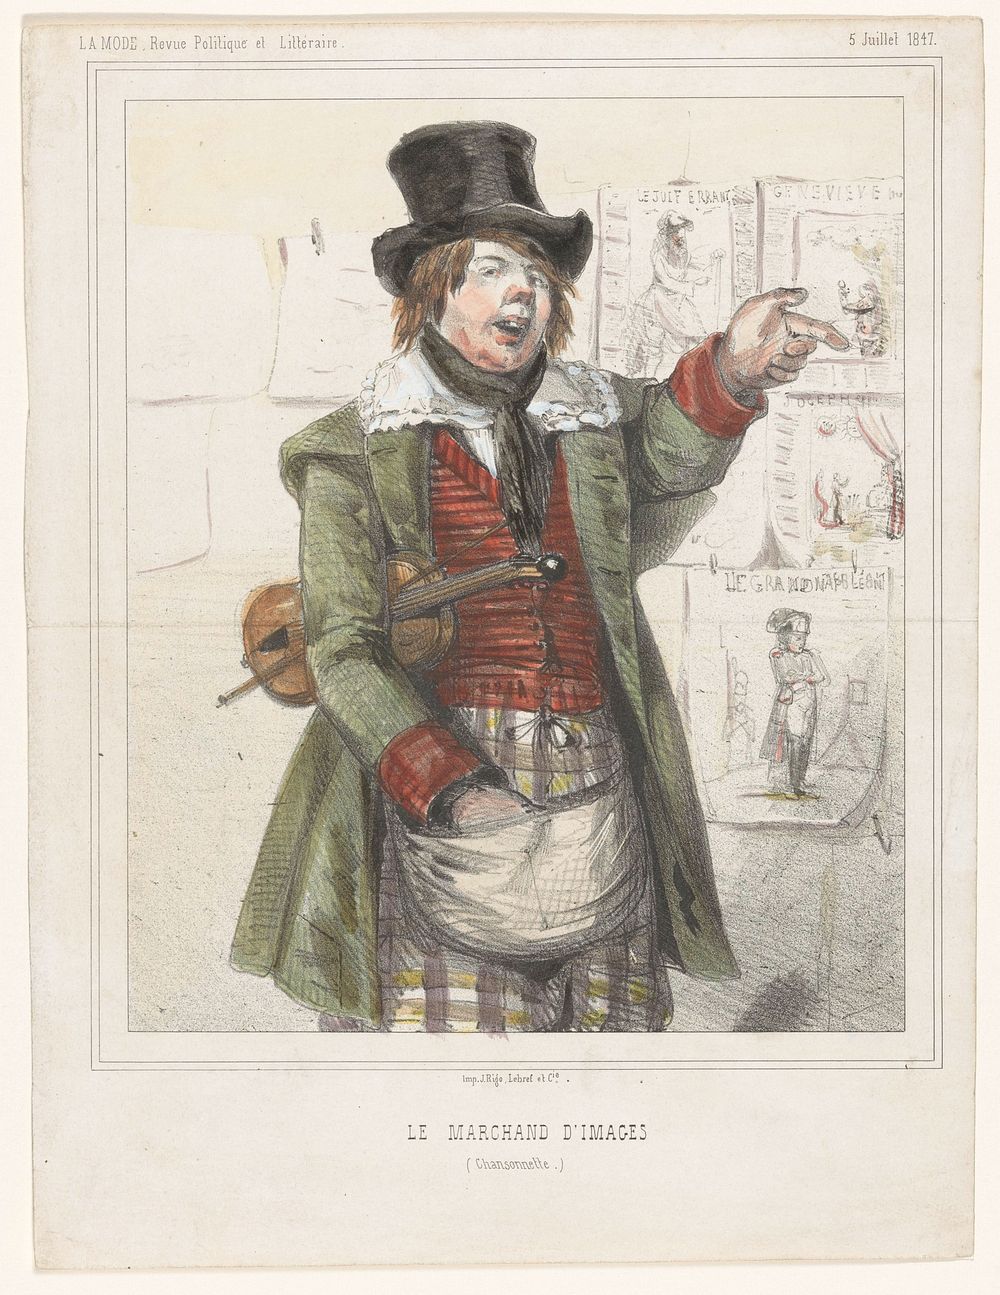 Prentverkoper met een viool onder zijn arm (1847) by anonymous and Lebref and Cie J Rigo